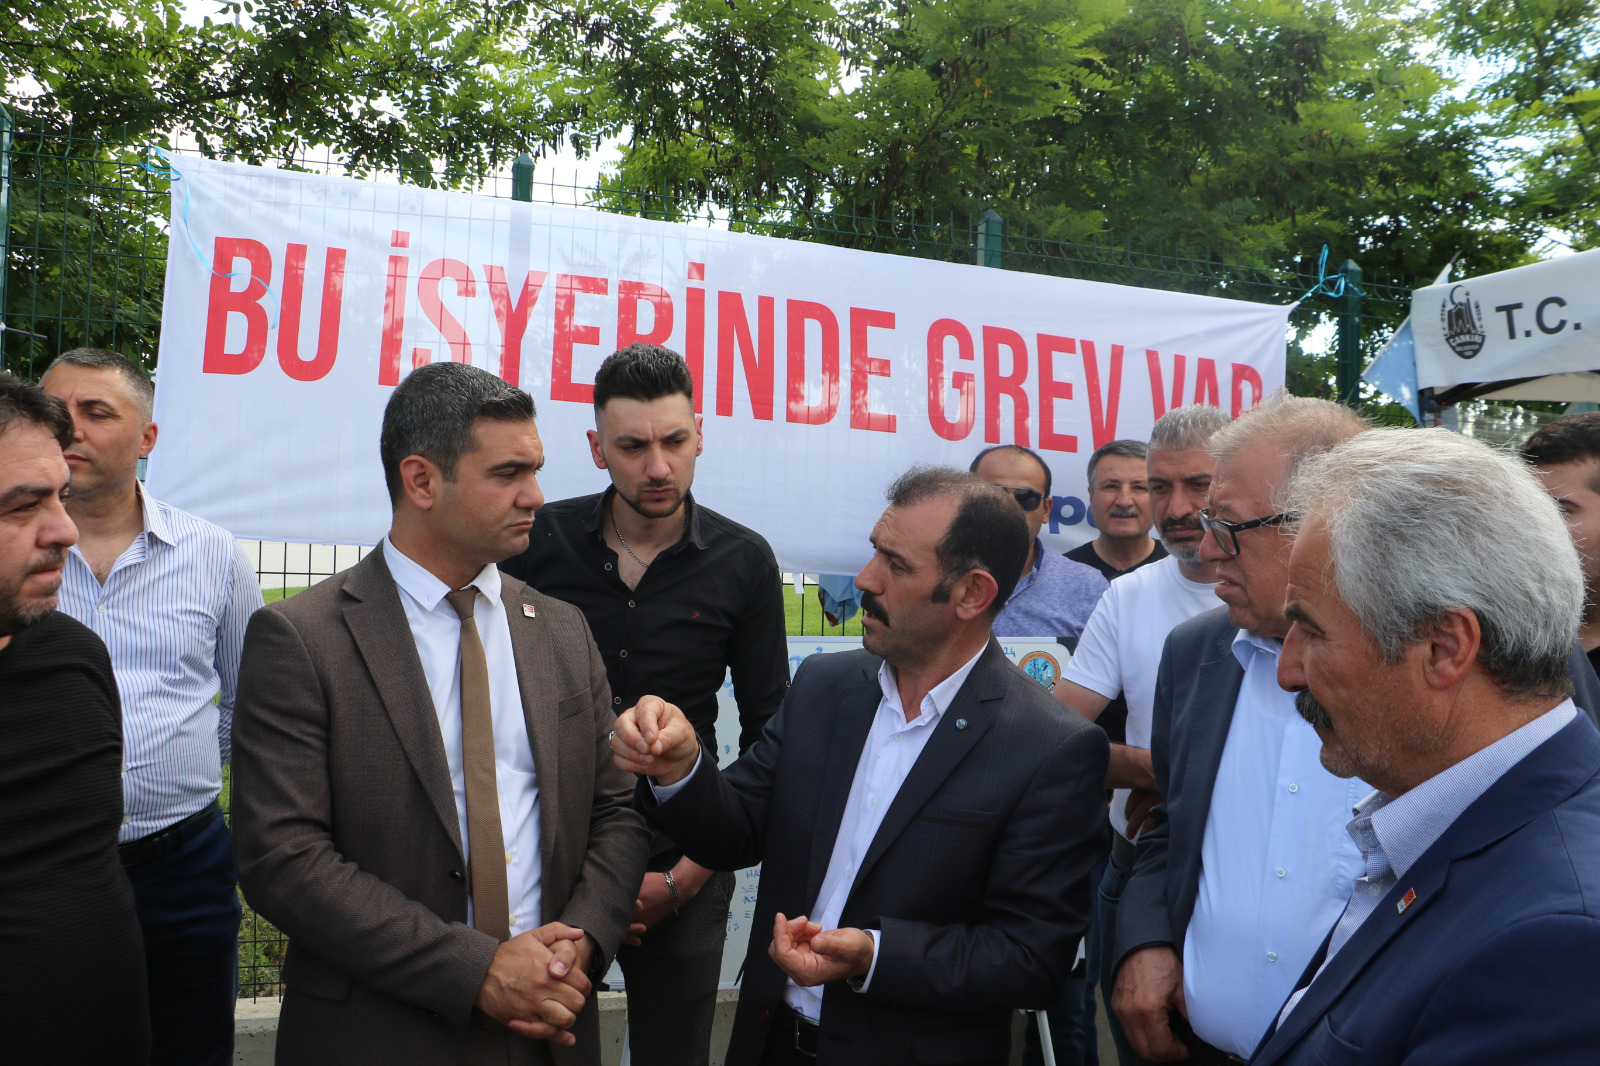 kirikkale-sumitomo-iscisi-cankiri-lastik-fabrikasi-destek-2 Kırıkkale'den Çankırı Lastik Fabrikası İşçisine Destek: Zafer Direnen Emekçinin Olacak